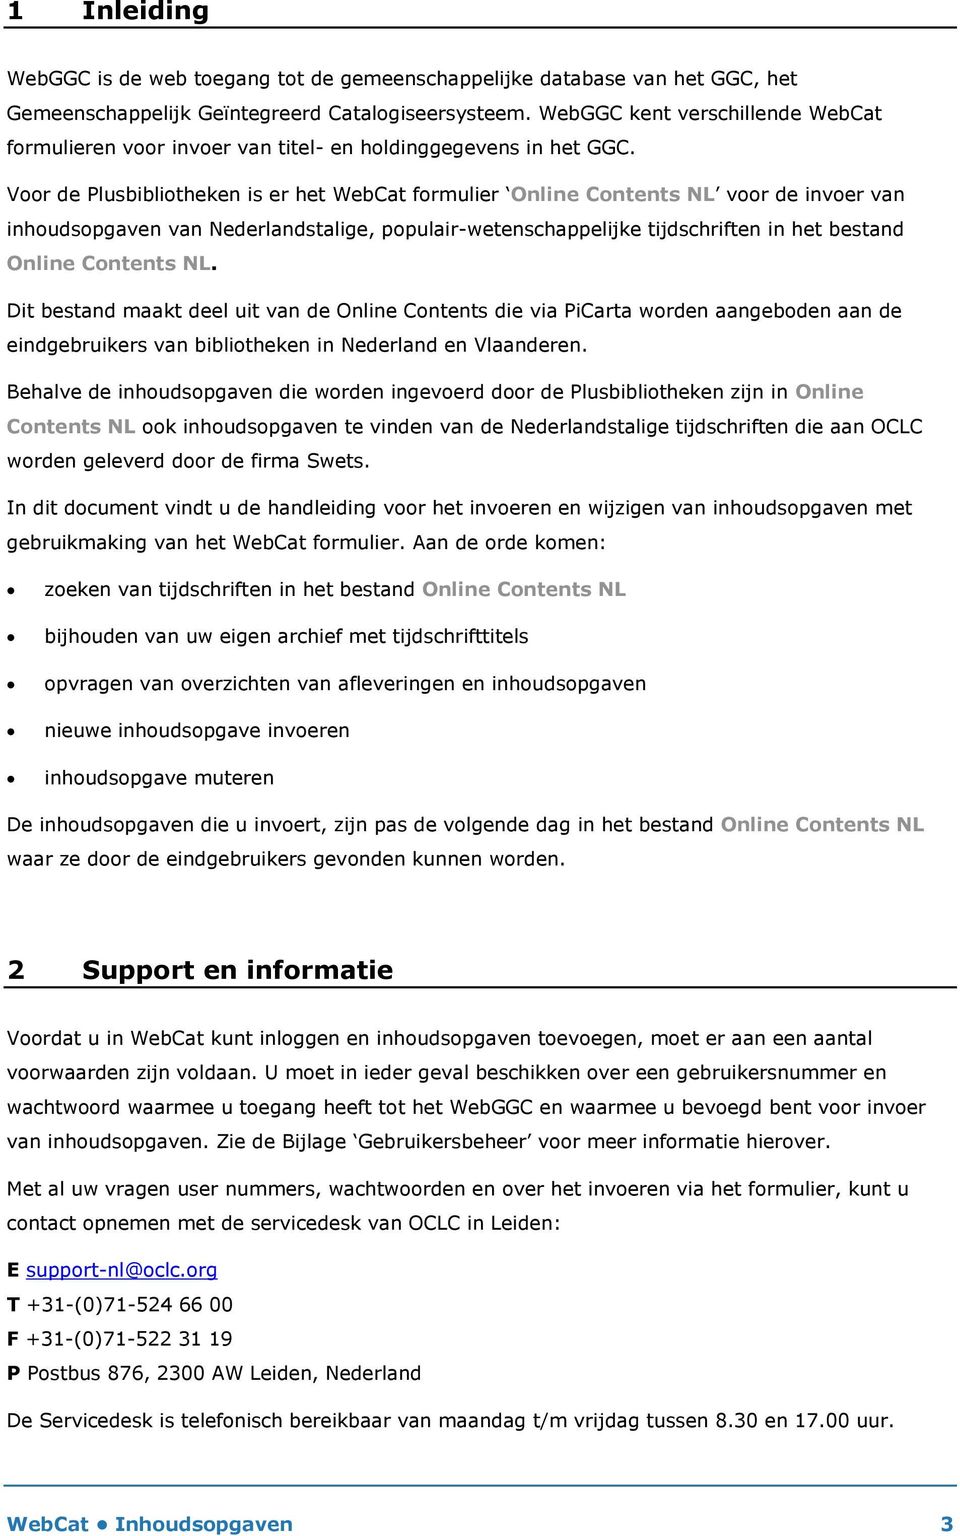 Voor de Plusbibliotheken is er het WebCat formulier Online Contents NL voor de invoer van inhoudsopgaven van Nederlandstalige, populair-wetenschappelijke tijdschriften in het bestand Online Contents